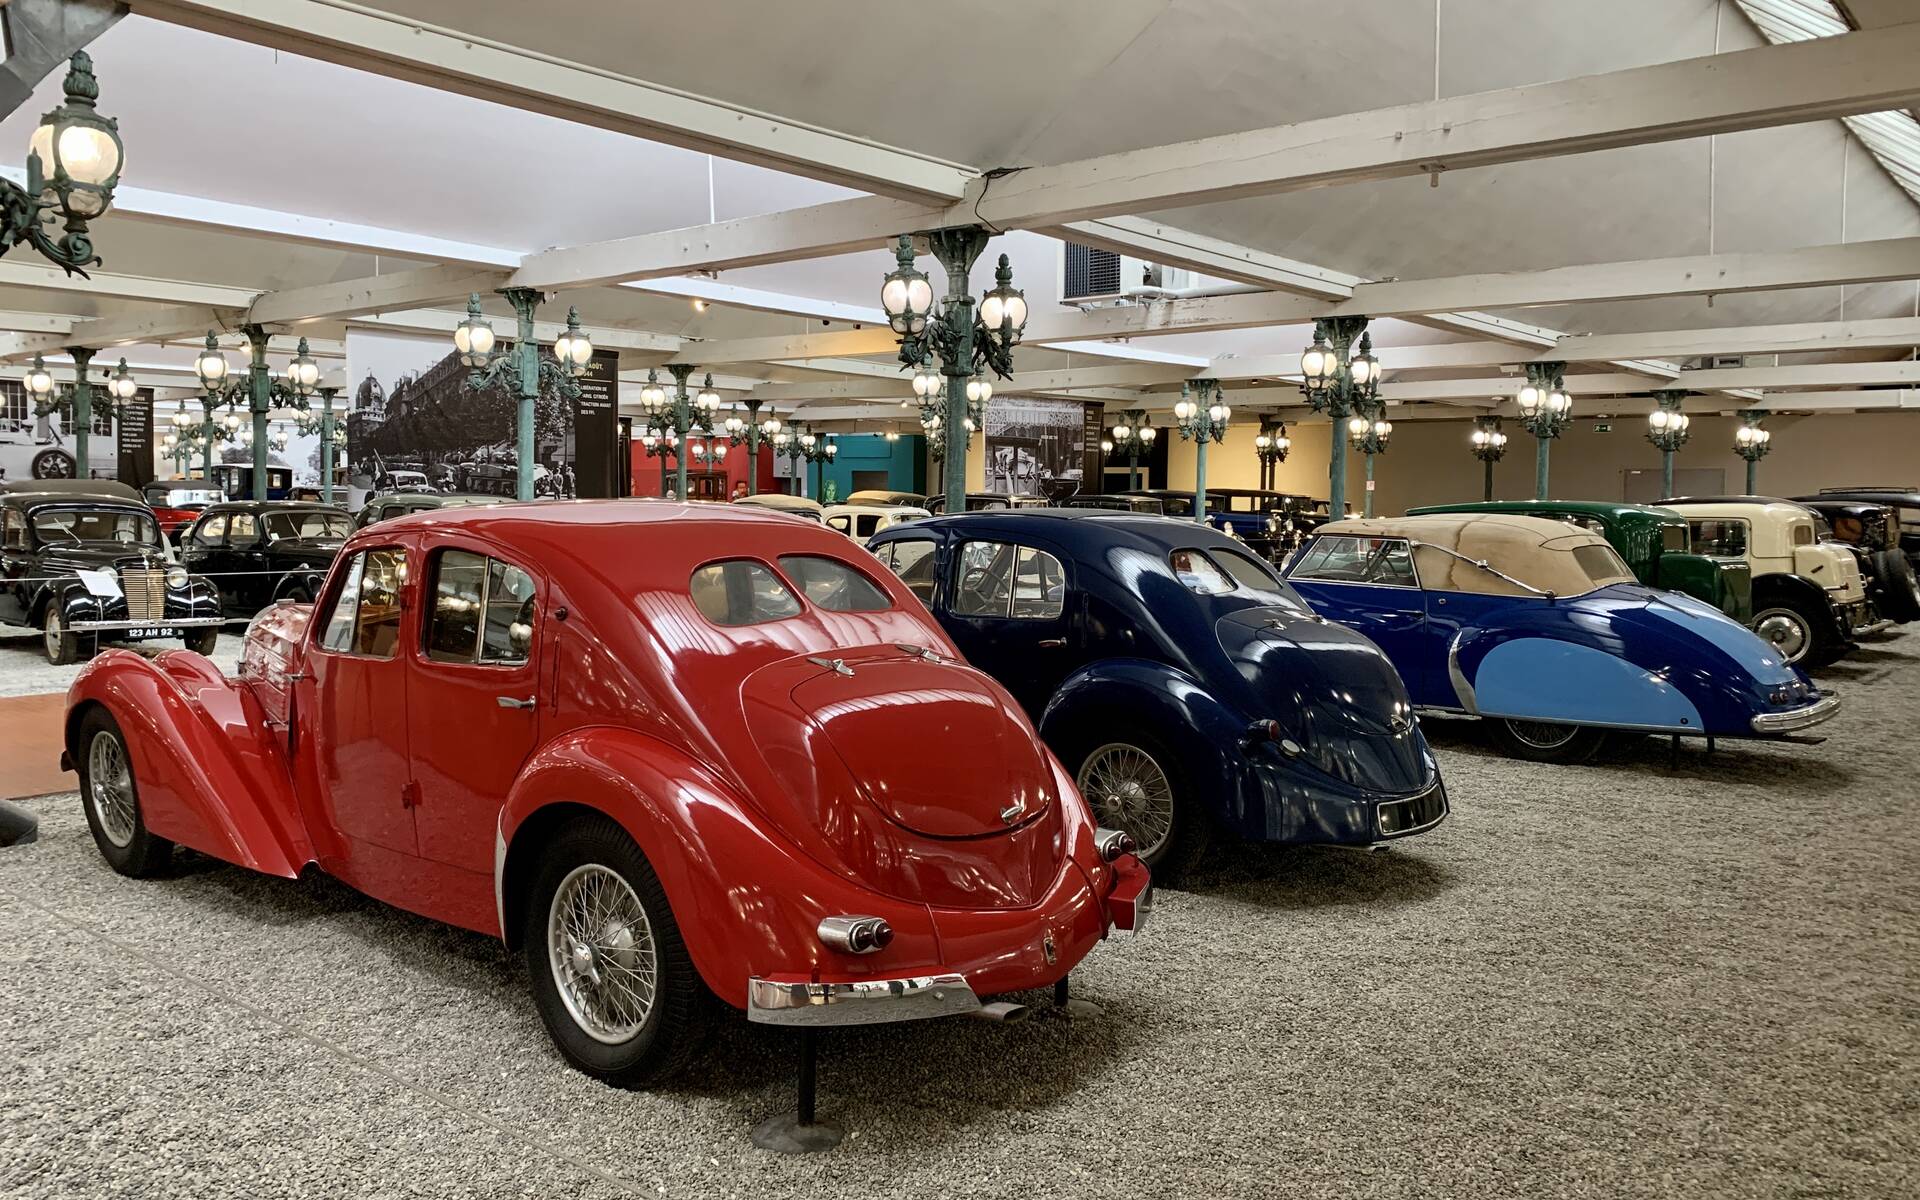 En photos : une centaine de Bugatti réunies dans un même musée 503067-en-photos-des-dizaines-de-bugatti-reunies-dans-un-meme-musee